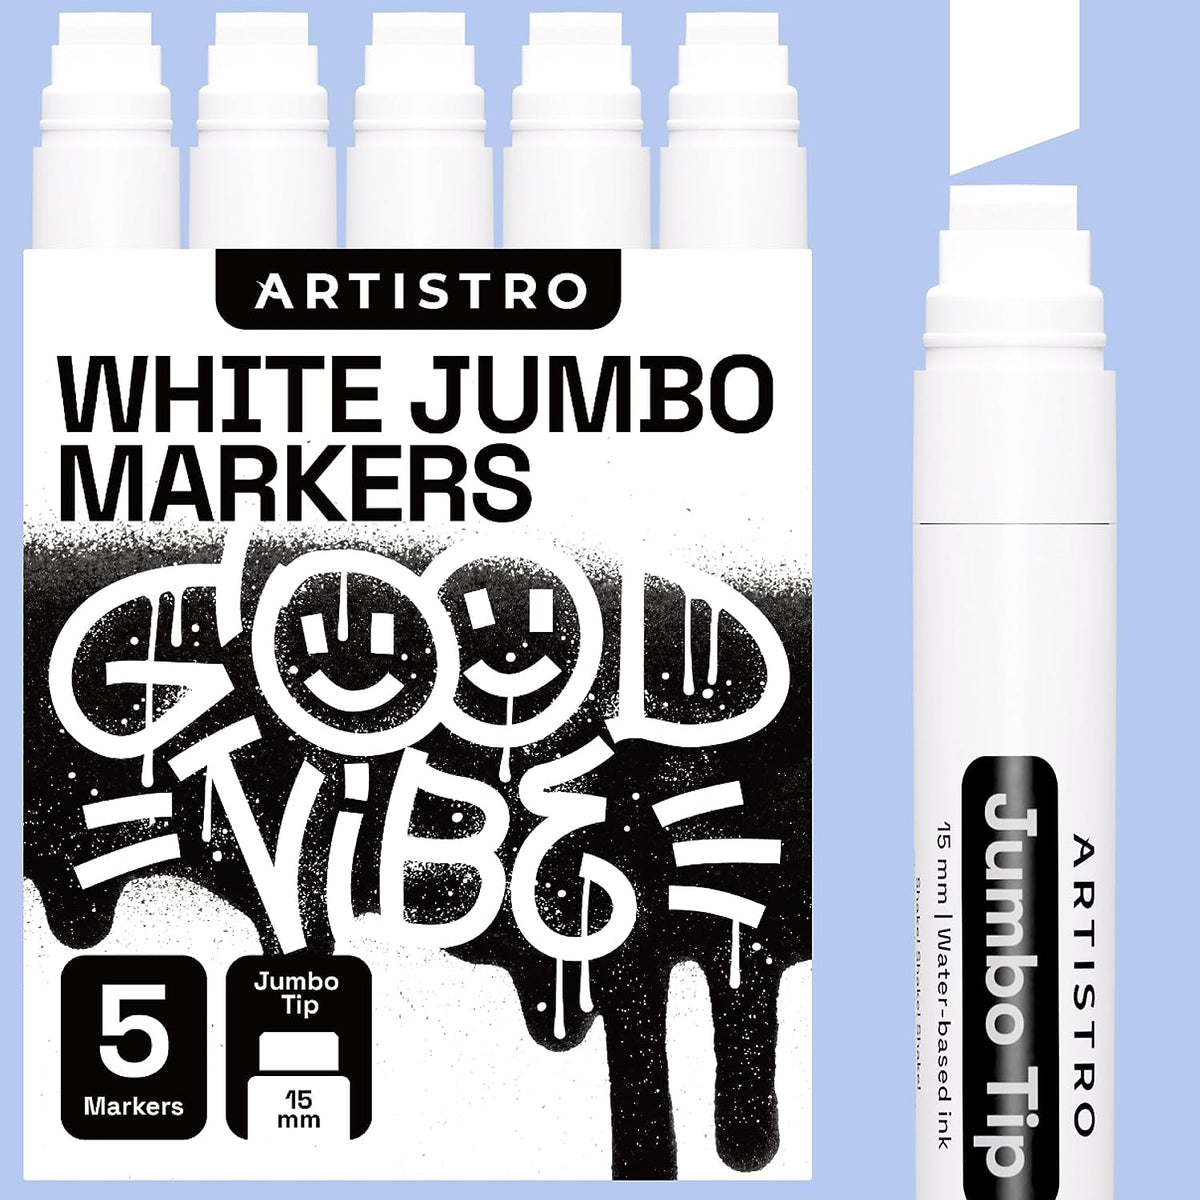 8 Metallic Jumbo Markers, Acrylic Markers with 15mm Jumbo Felt Tip